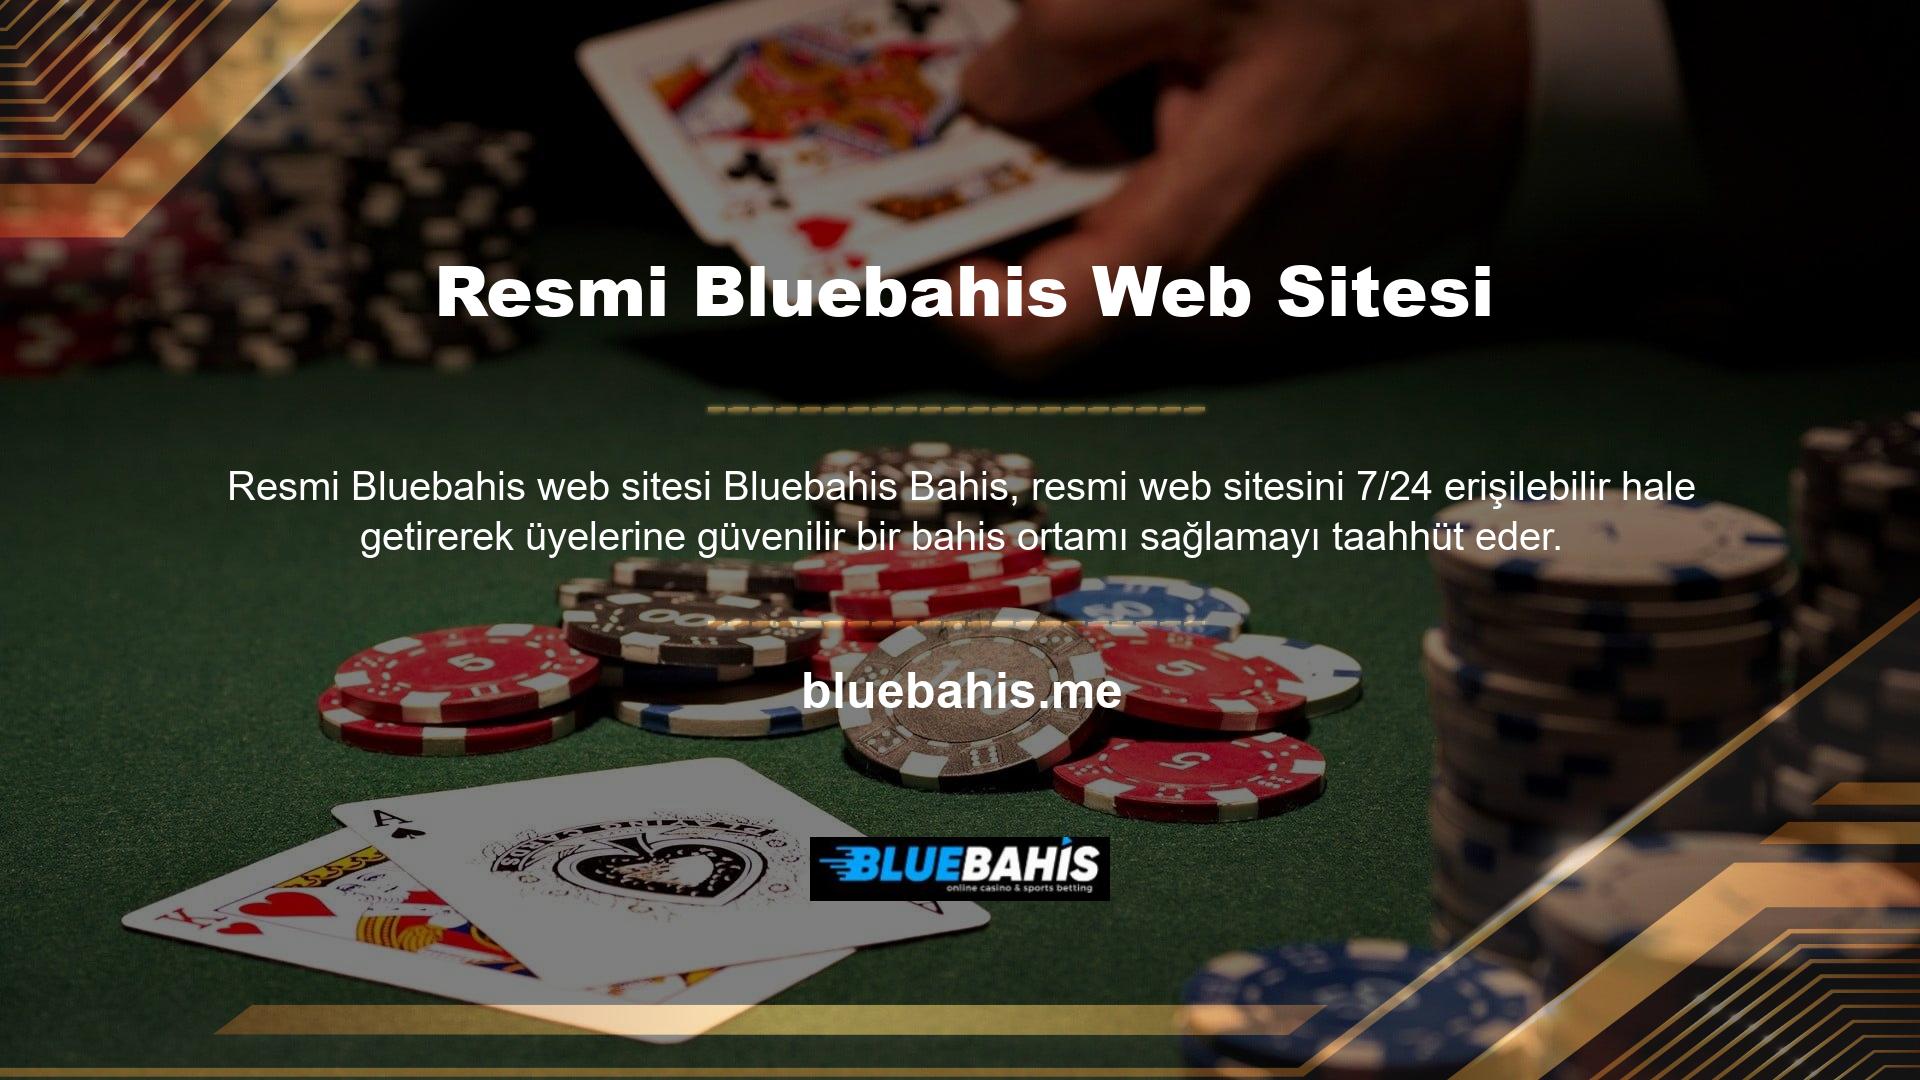 Bluebahisu resmi internet sitesindeki bilgilere erişirken sitenin SNS hesabı kullanılabilir